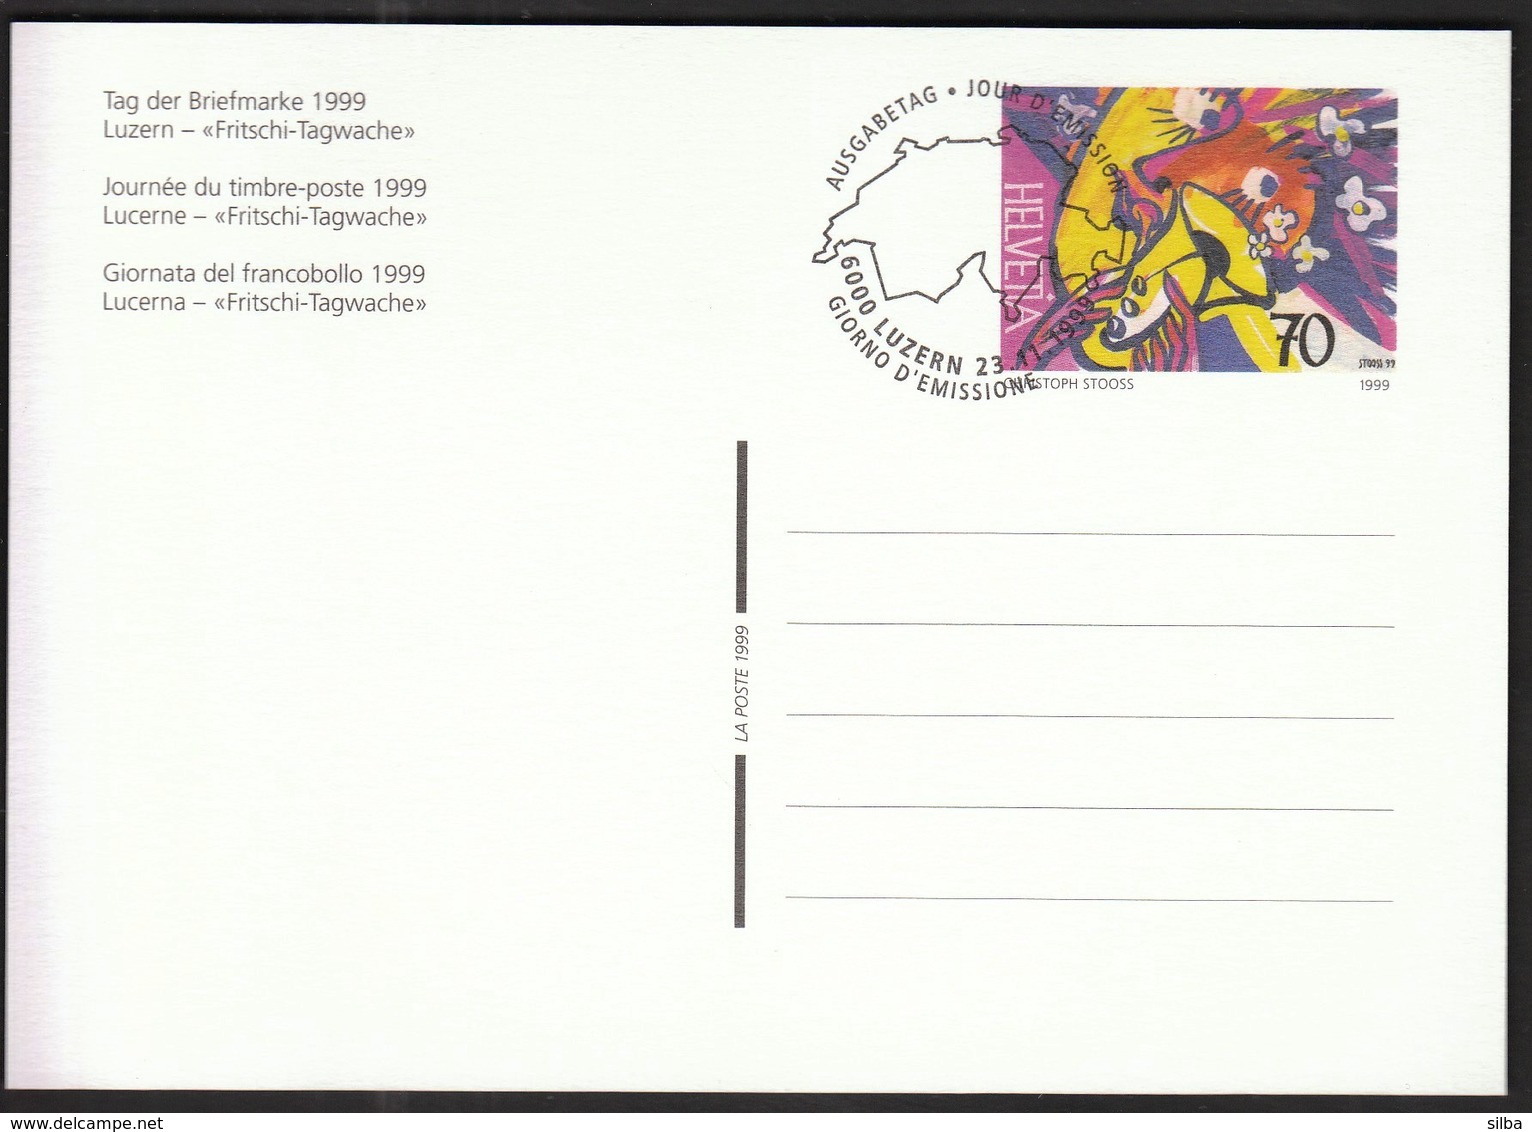 Switzerland Luzern 1999 / Tag Der Briefmarke, Stamp Day / Fritschi Tagwache / Postal Stationery - Ganzsachen